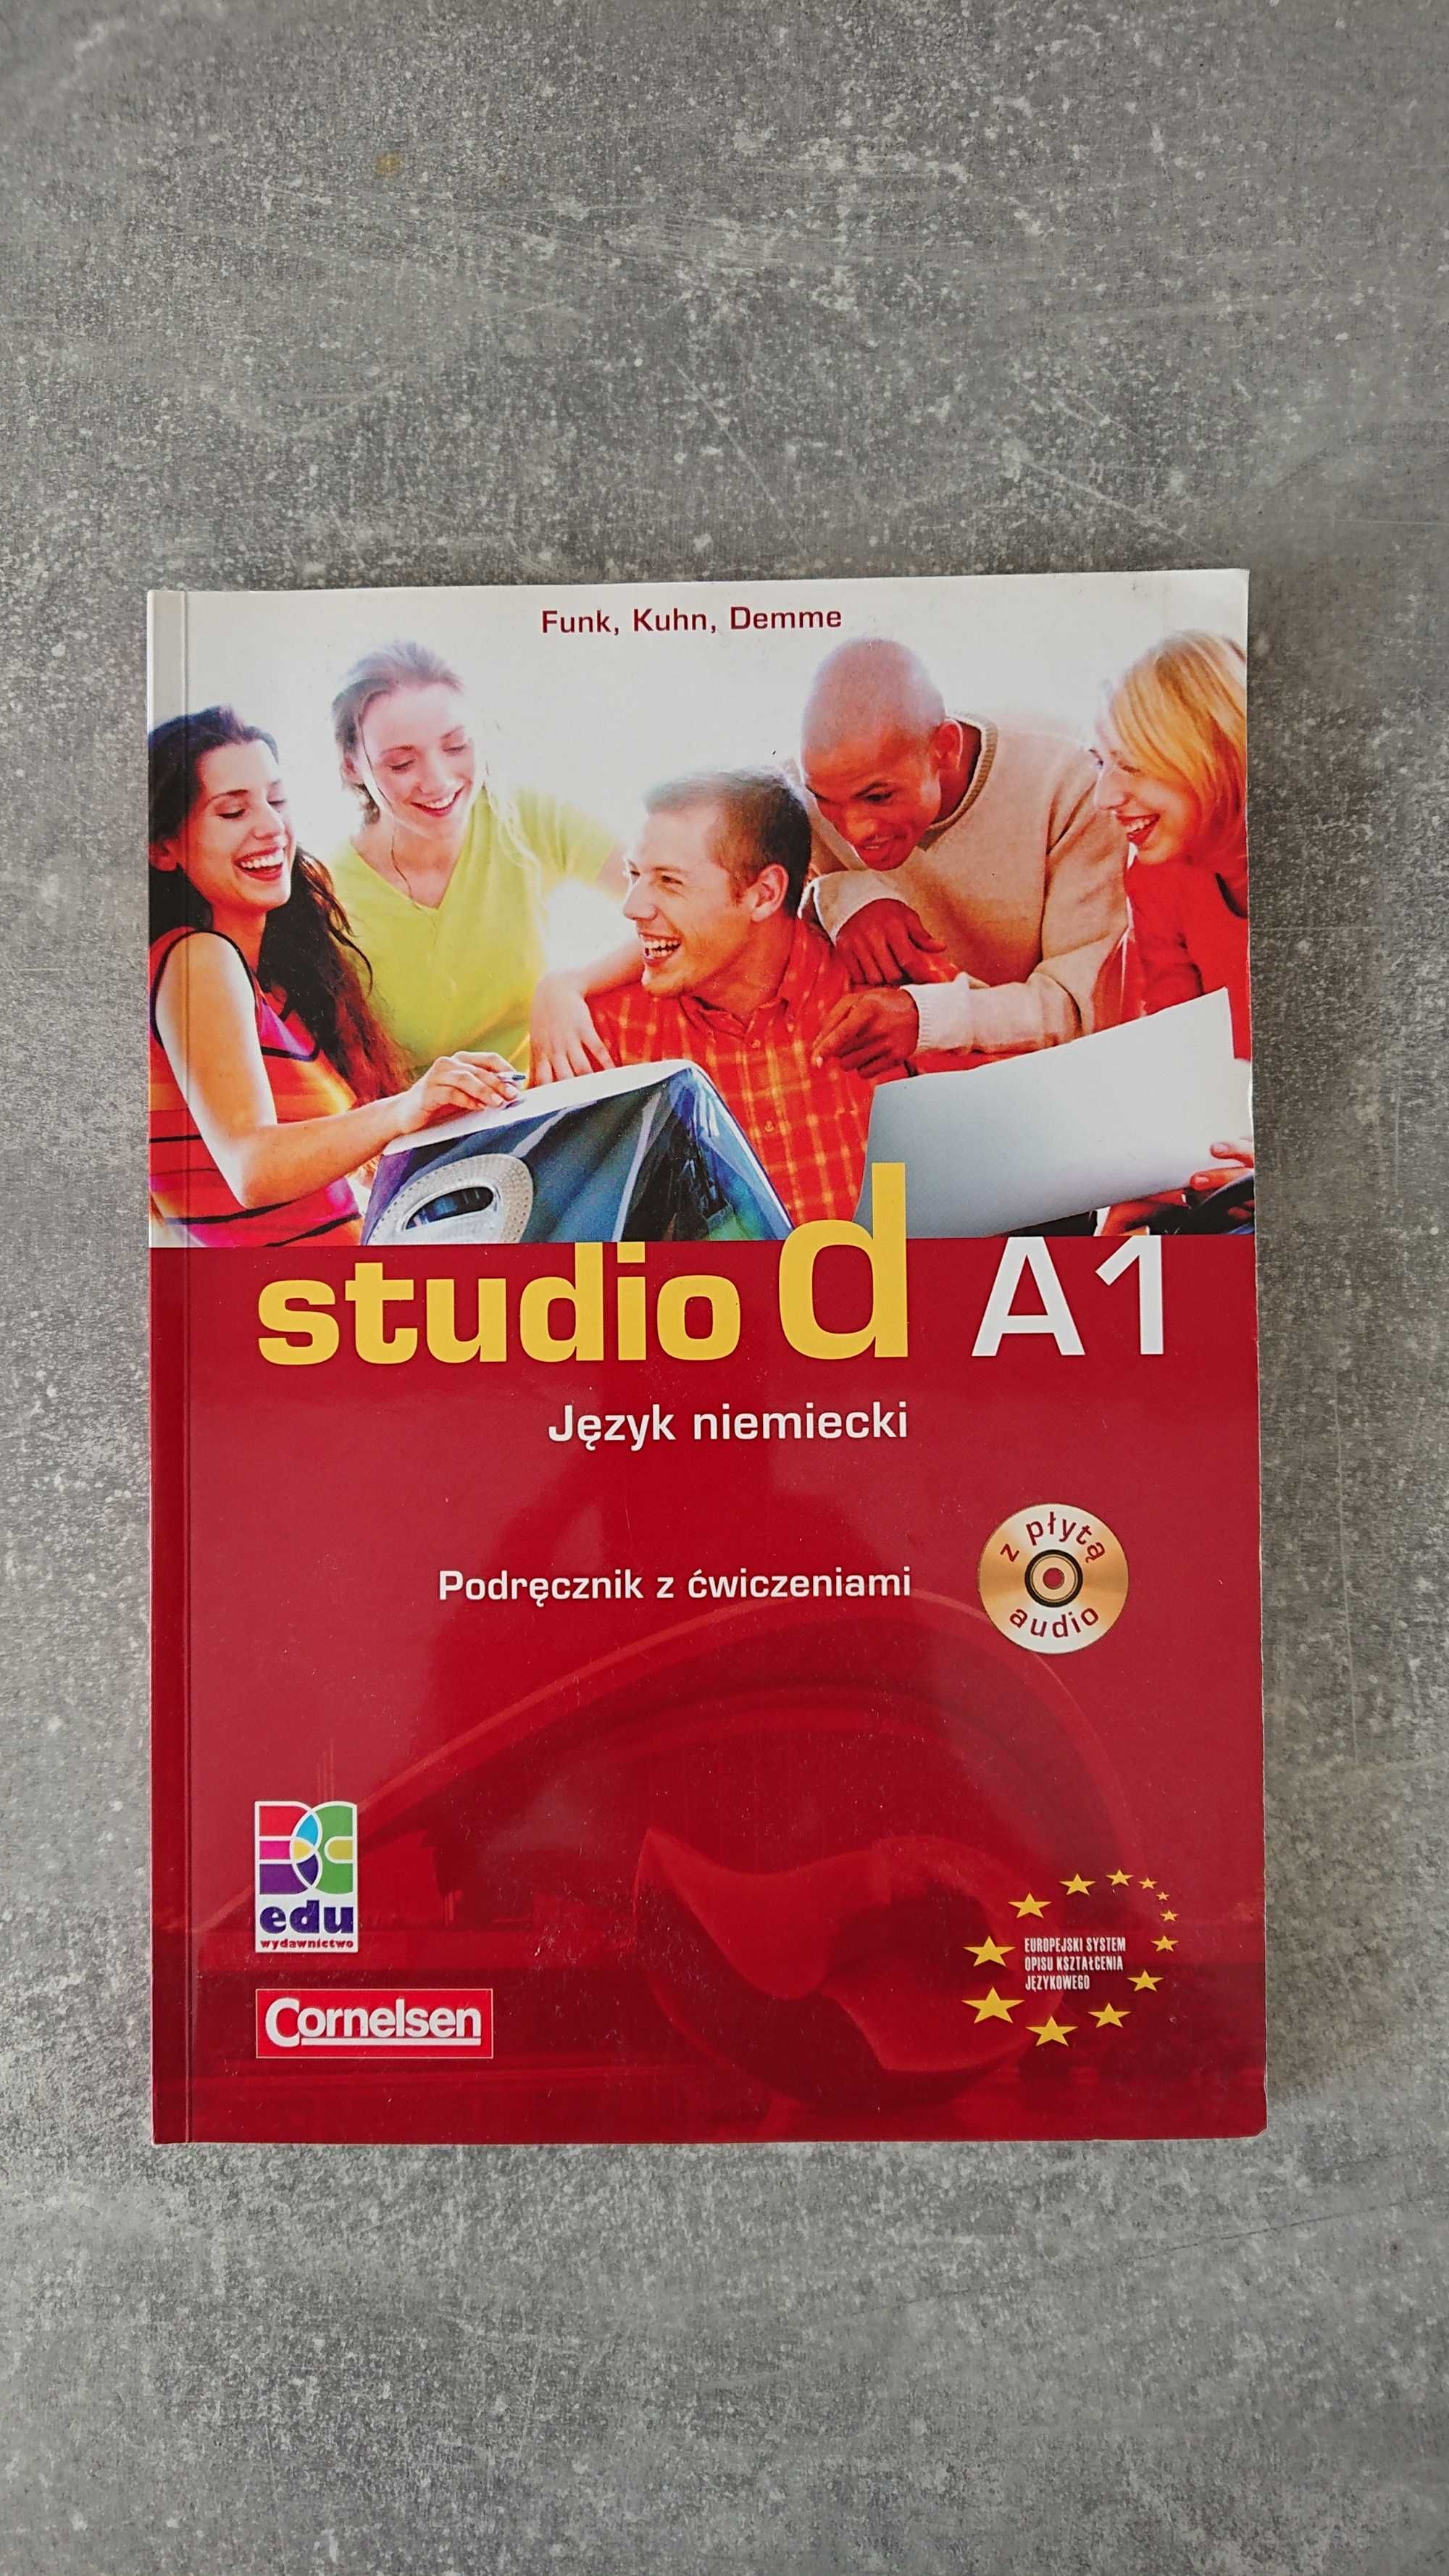 Podręcznik z ćwiczeniami do nauki jęz. niemieckiego